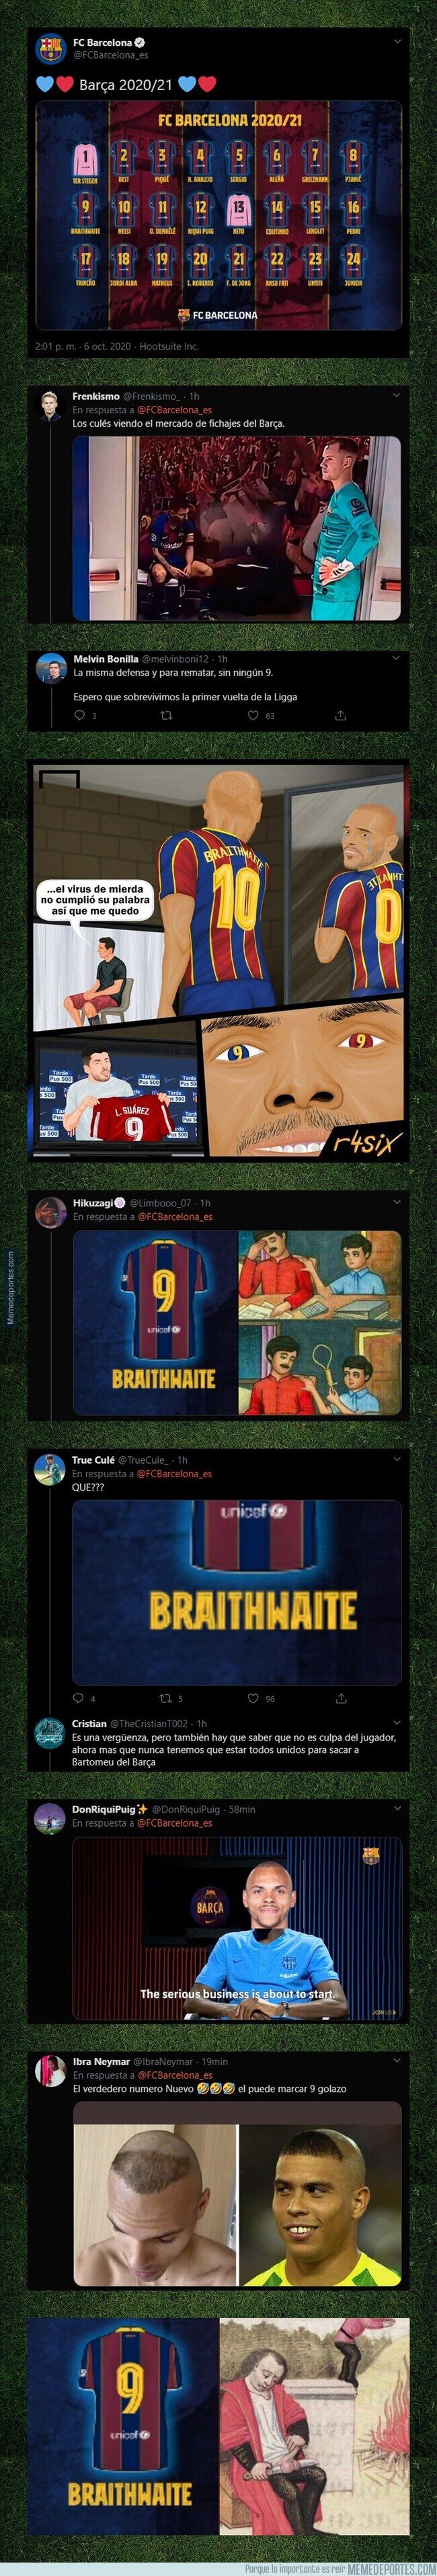 1117356 - Brutal: Las respuestas que está recibiendo el Barça tras anunciar que su '9' es Braithwaite